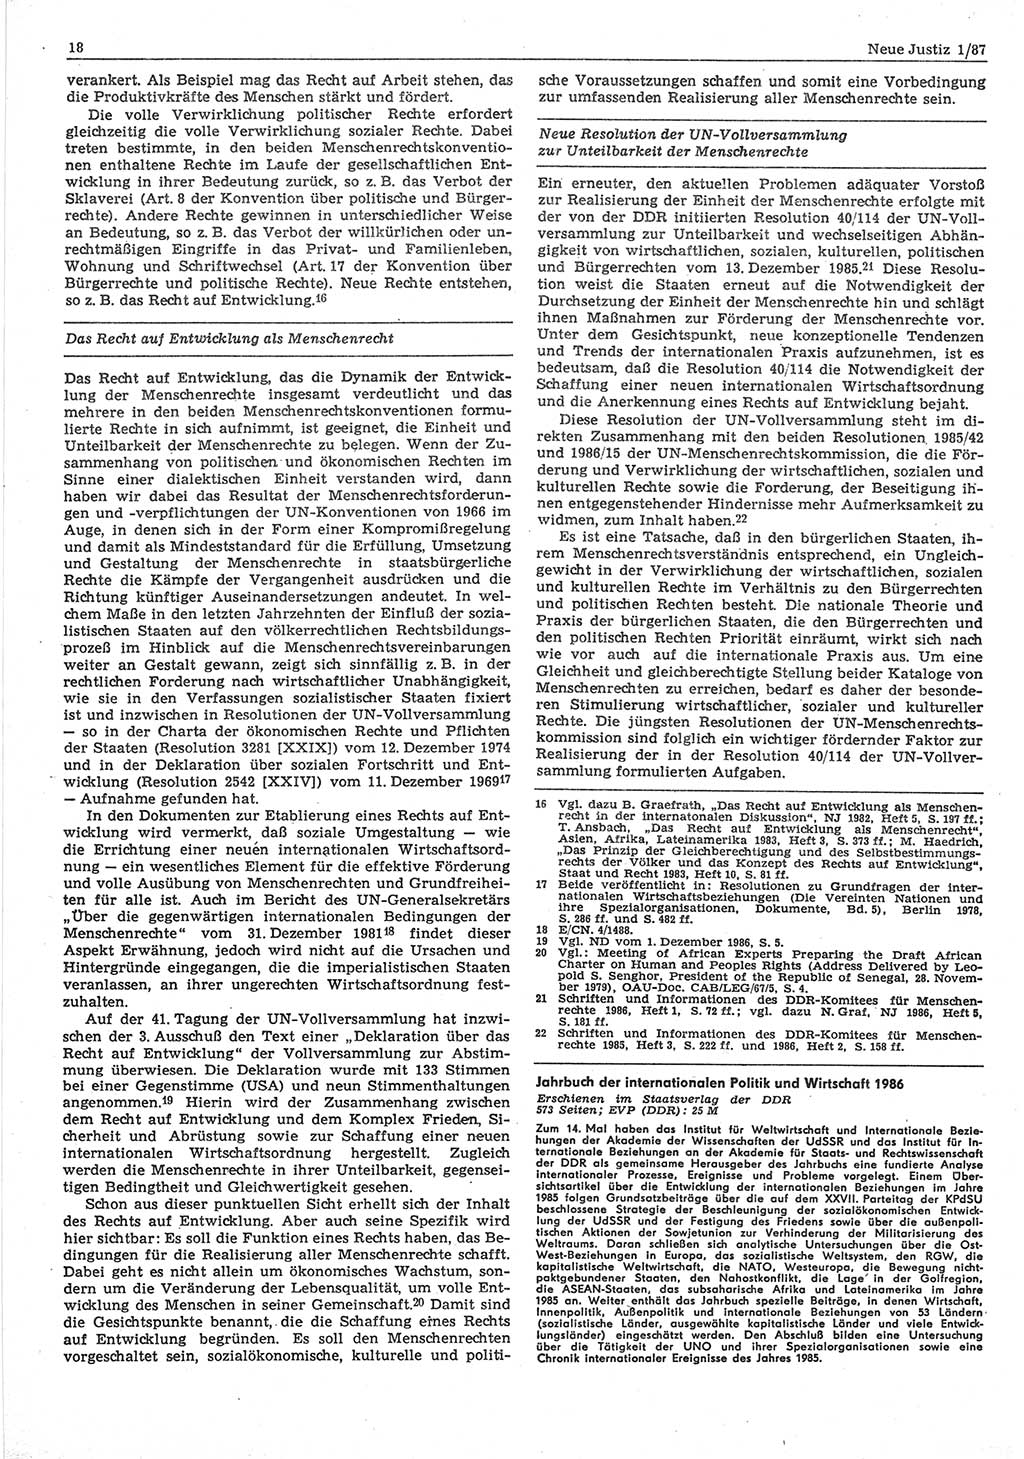 Neue Justiz (NJ), Zeitschrift für sozialistisches Recht und Gesetzlichkeit [Deutsche Demokratische Republik (DDR)], 41. Jahrgang 1987, Seite 18 (NJ DDR 1987, S. 18)